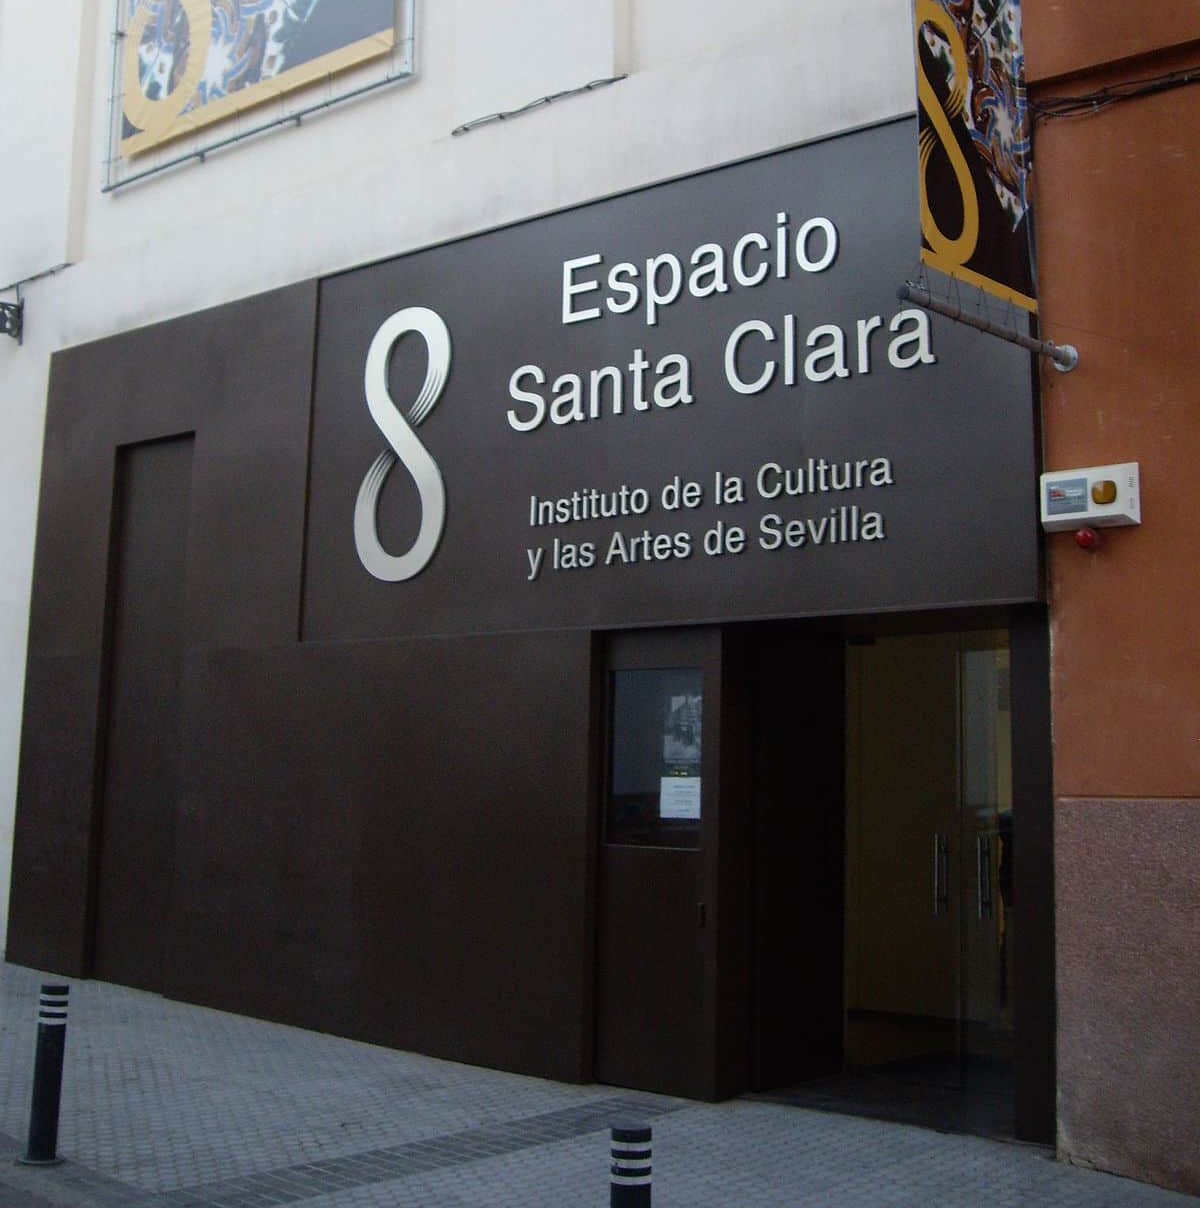 Una obra de teatro en Sevilla enaltece a Magallanes y denosta a Elcano